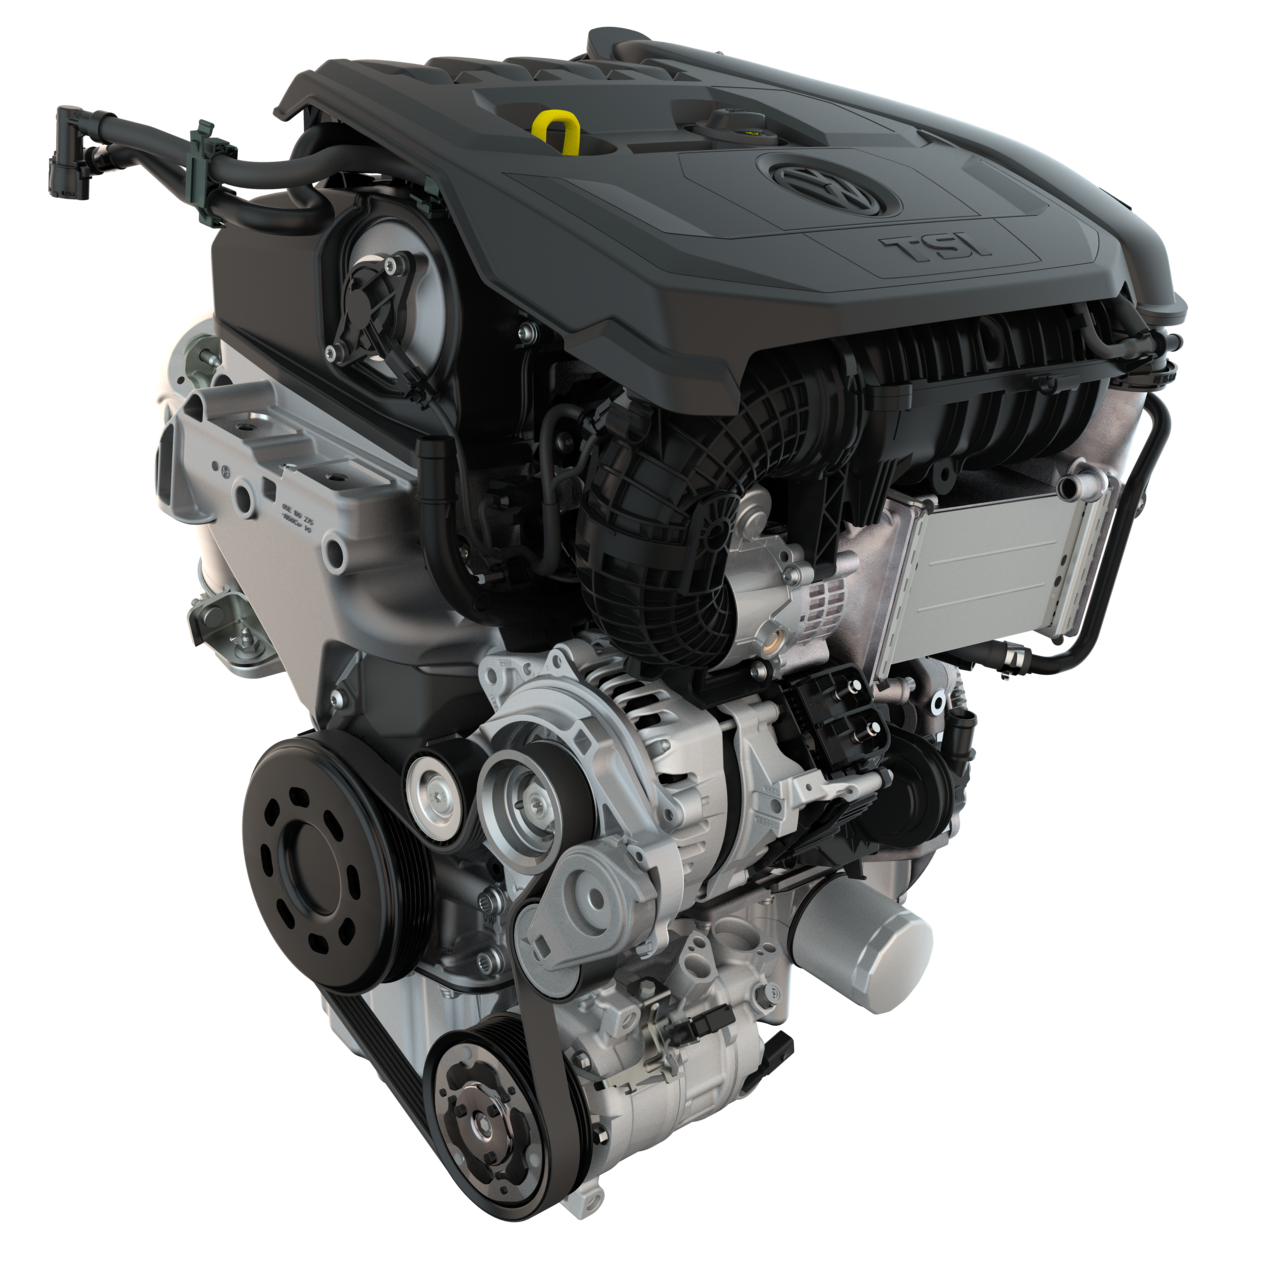 Silnik EA211 to główny silnik nowej generacji samochodów marki VAG."]